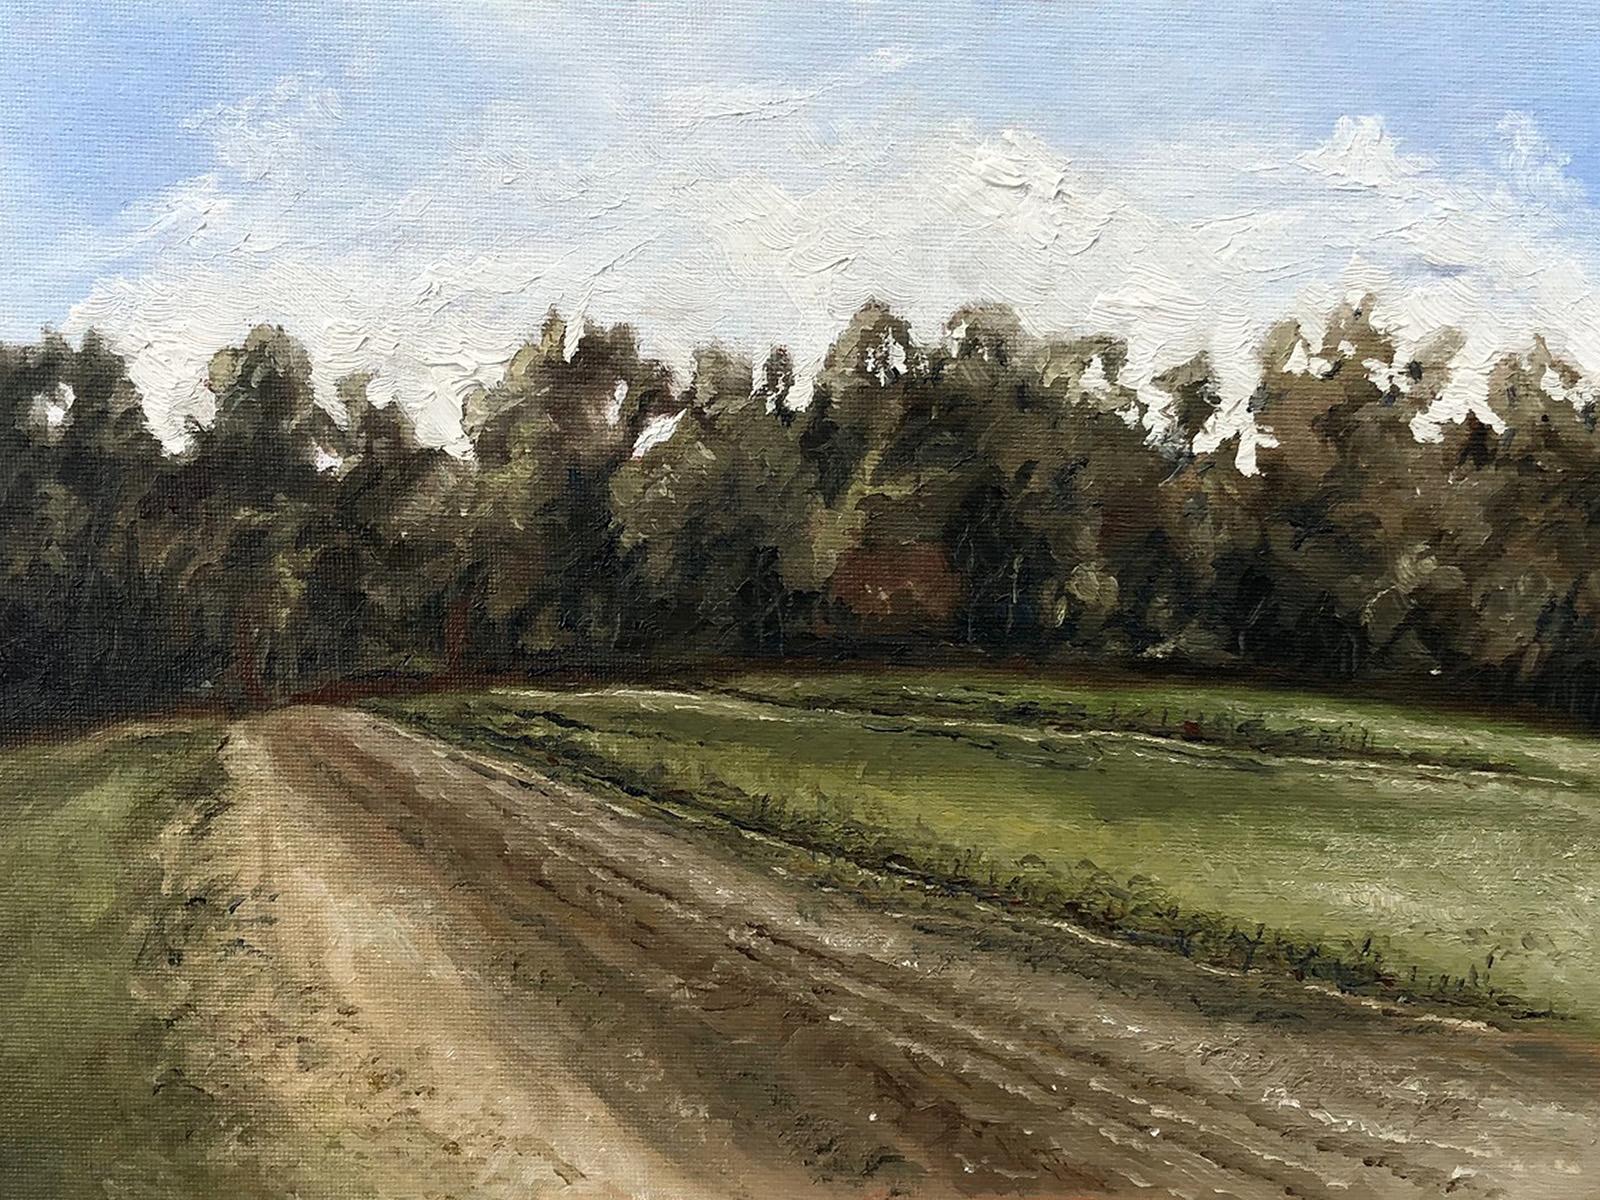 Landscape Painting Steve Sangapore - « Nouvelle-Angleterre, Printemps #2 », réaliste, paysage, Concord, peinture à l'huile